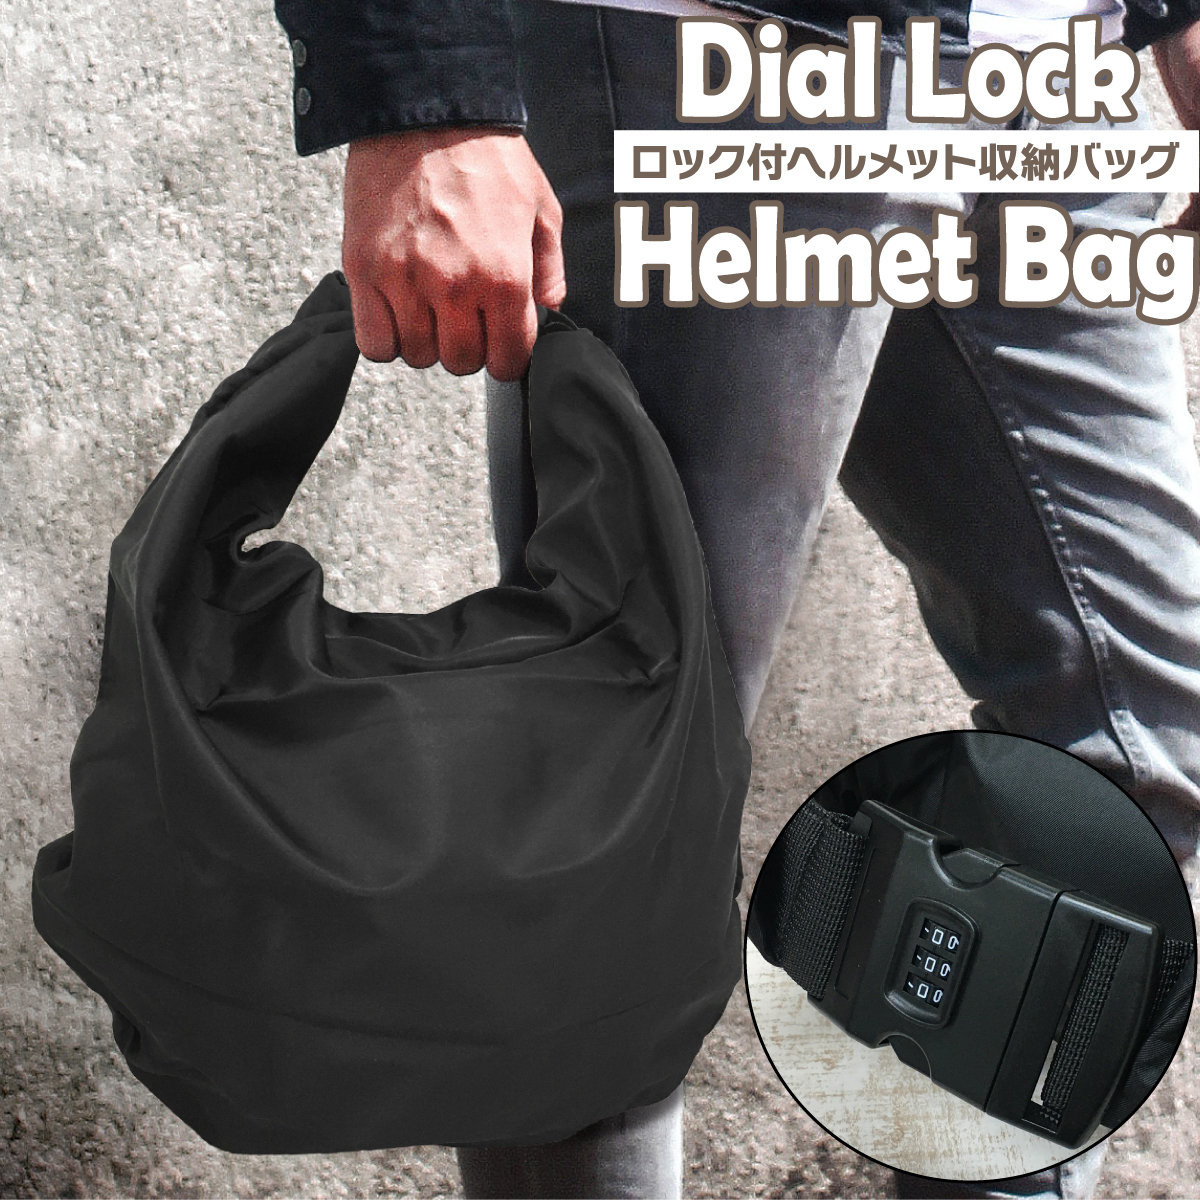  кодовый замок есть шлем сумка защита пакет черный водоотталкивающий гибкий шлем место хранения многоцелевой сумка баскетбол футбол bare- спорт пакет текстильная застёжка эко-сумка 